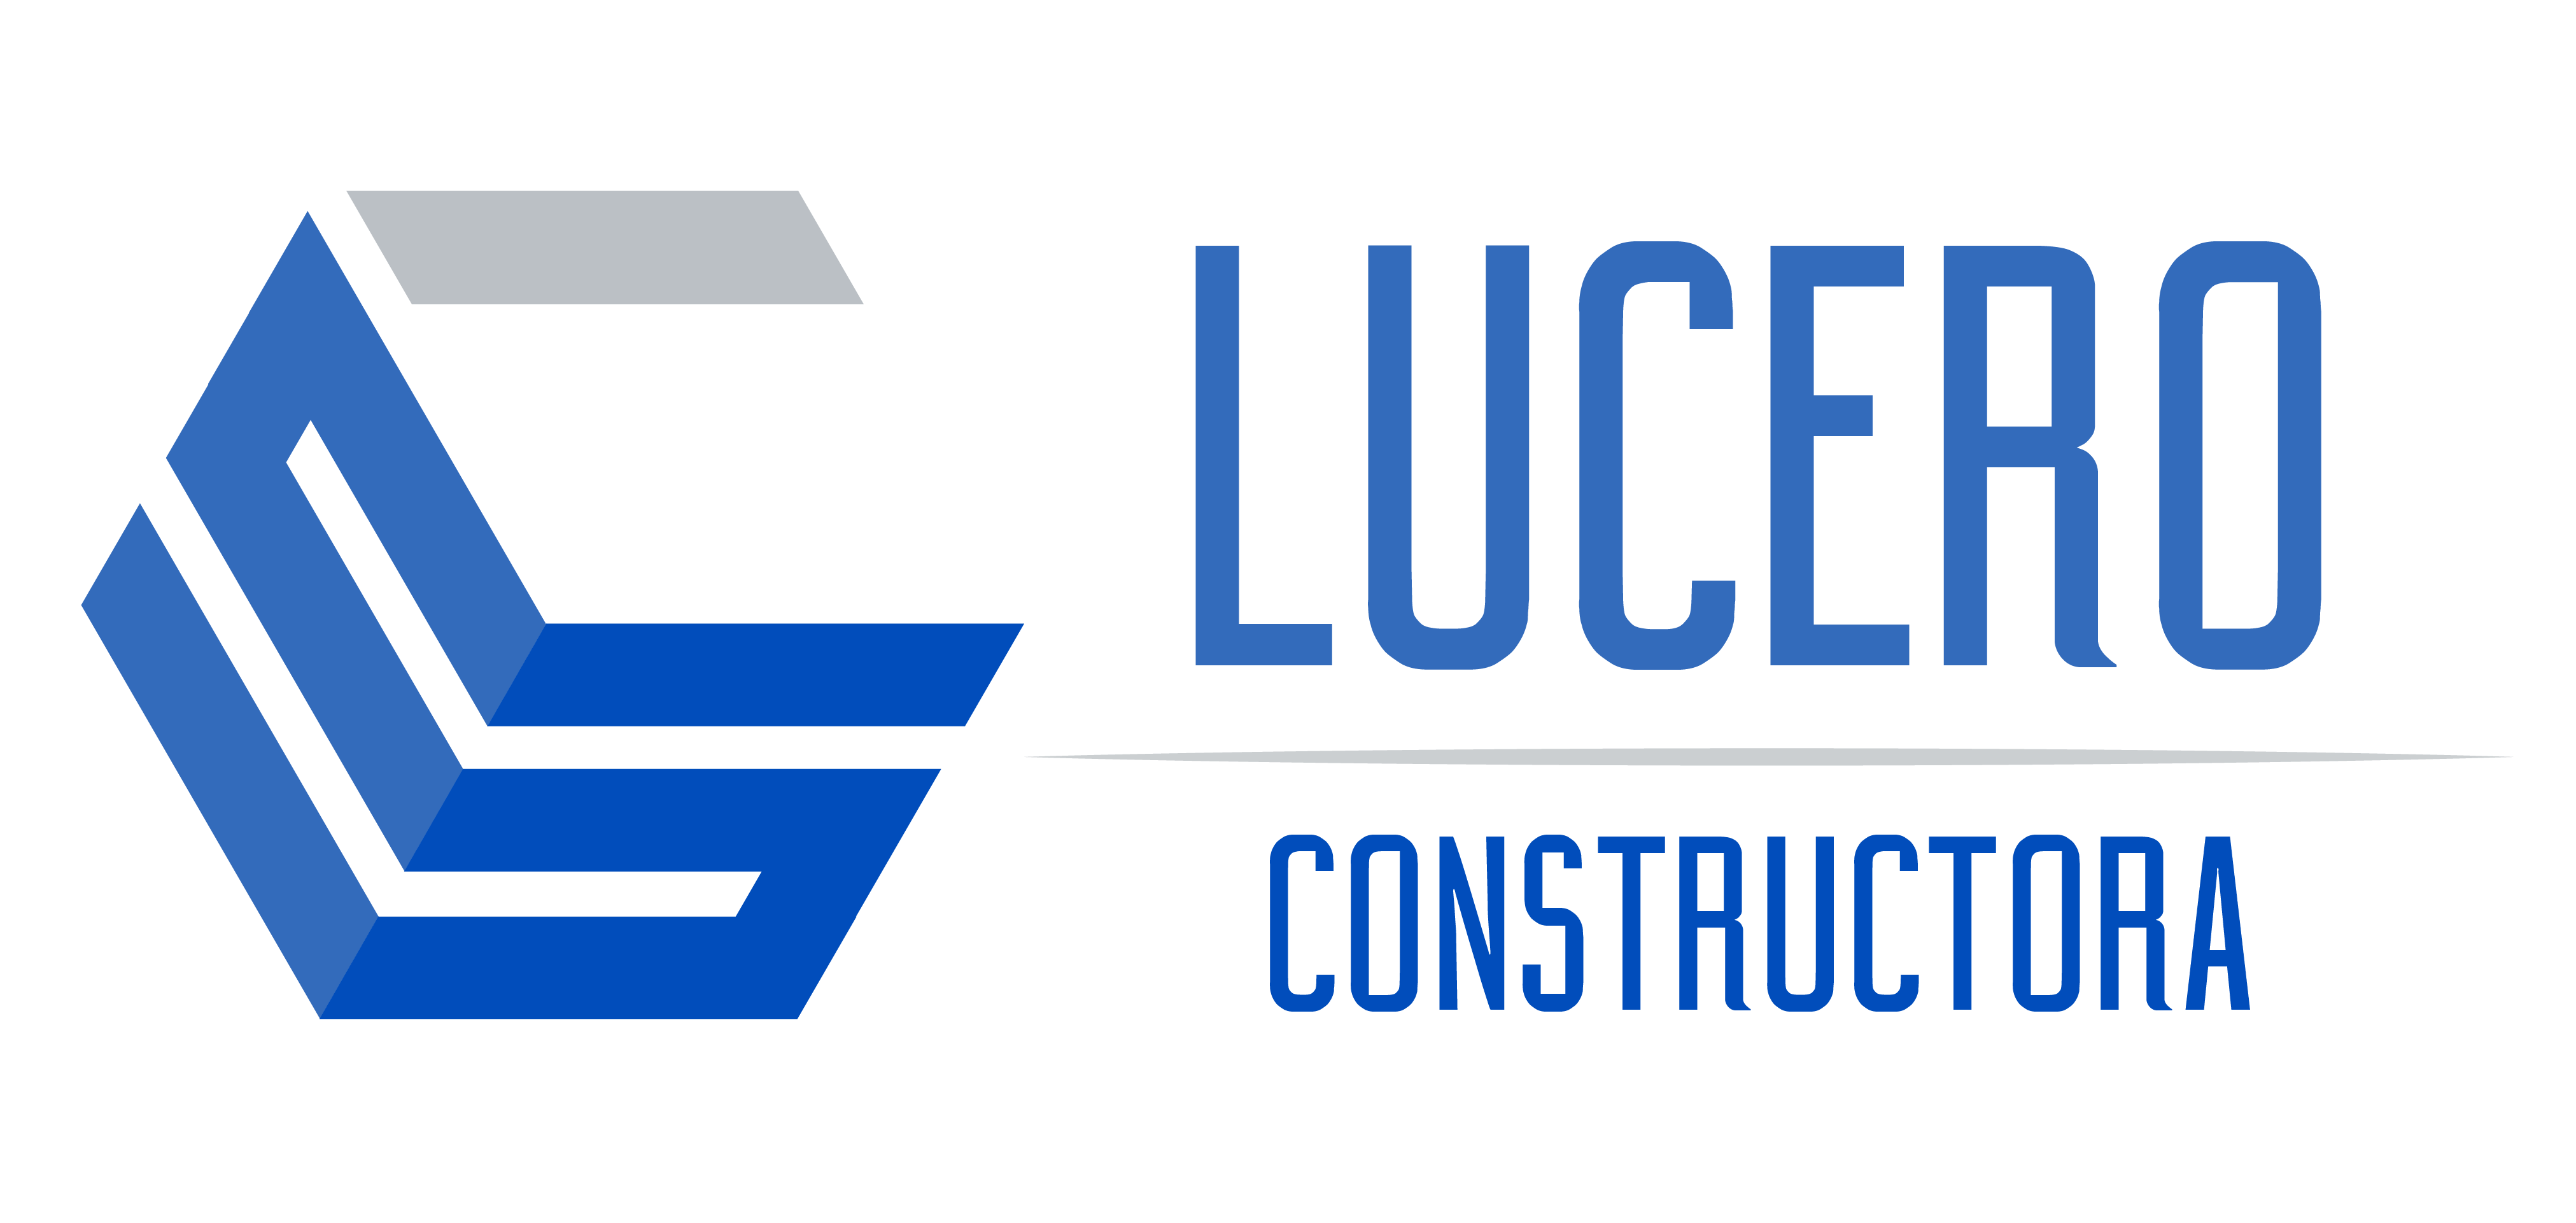 Constructora Lucero